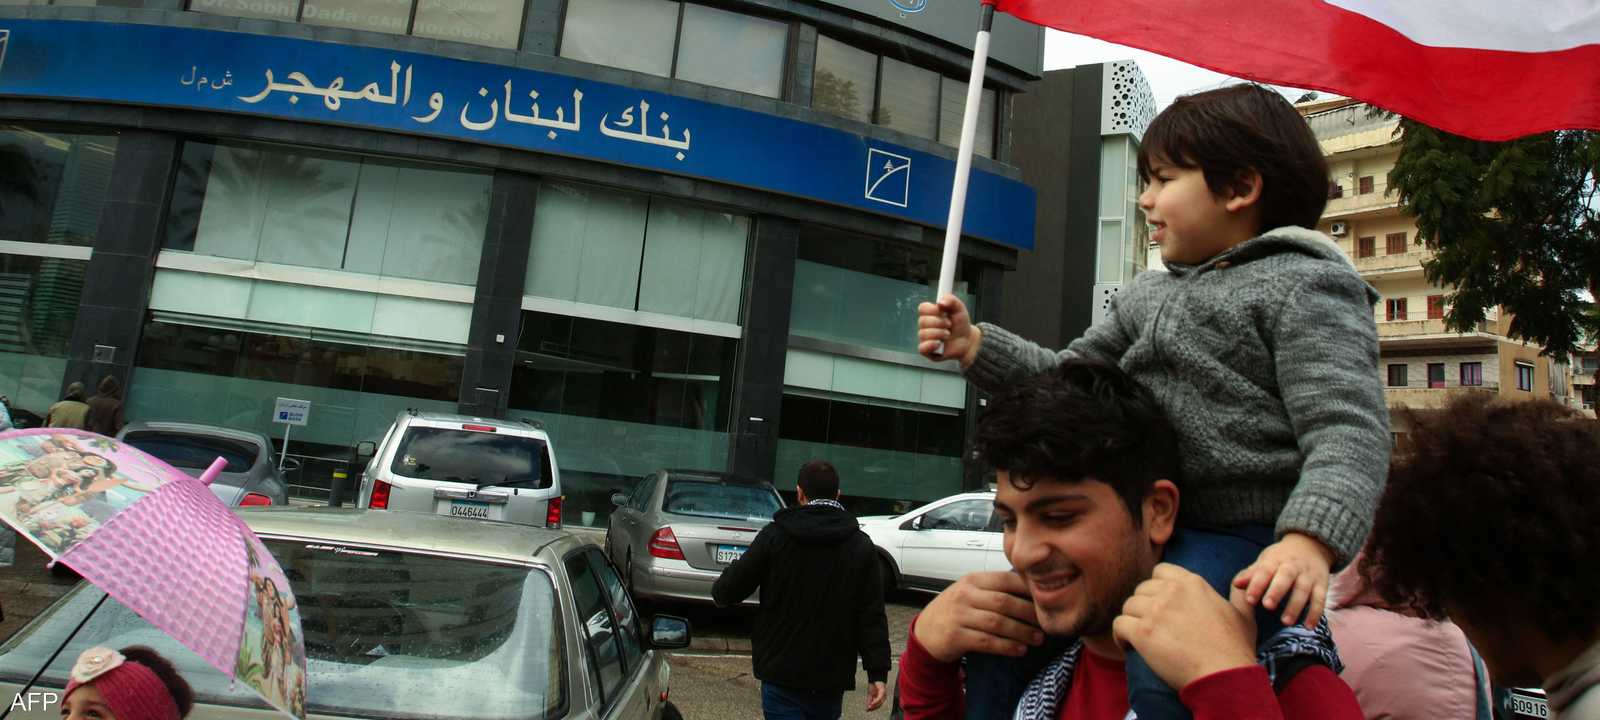 بنوك لبنان تعلن عن إضراب